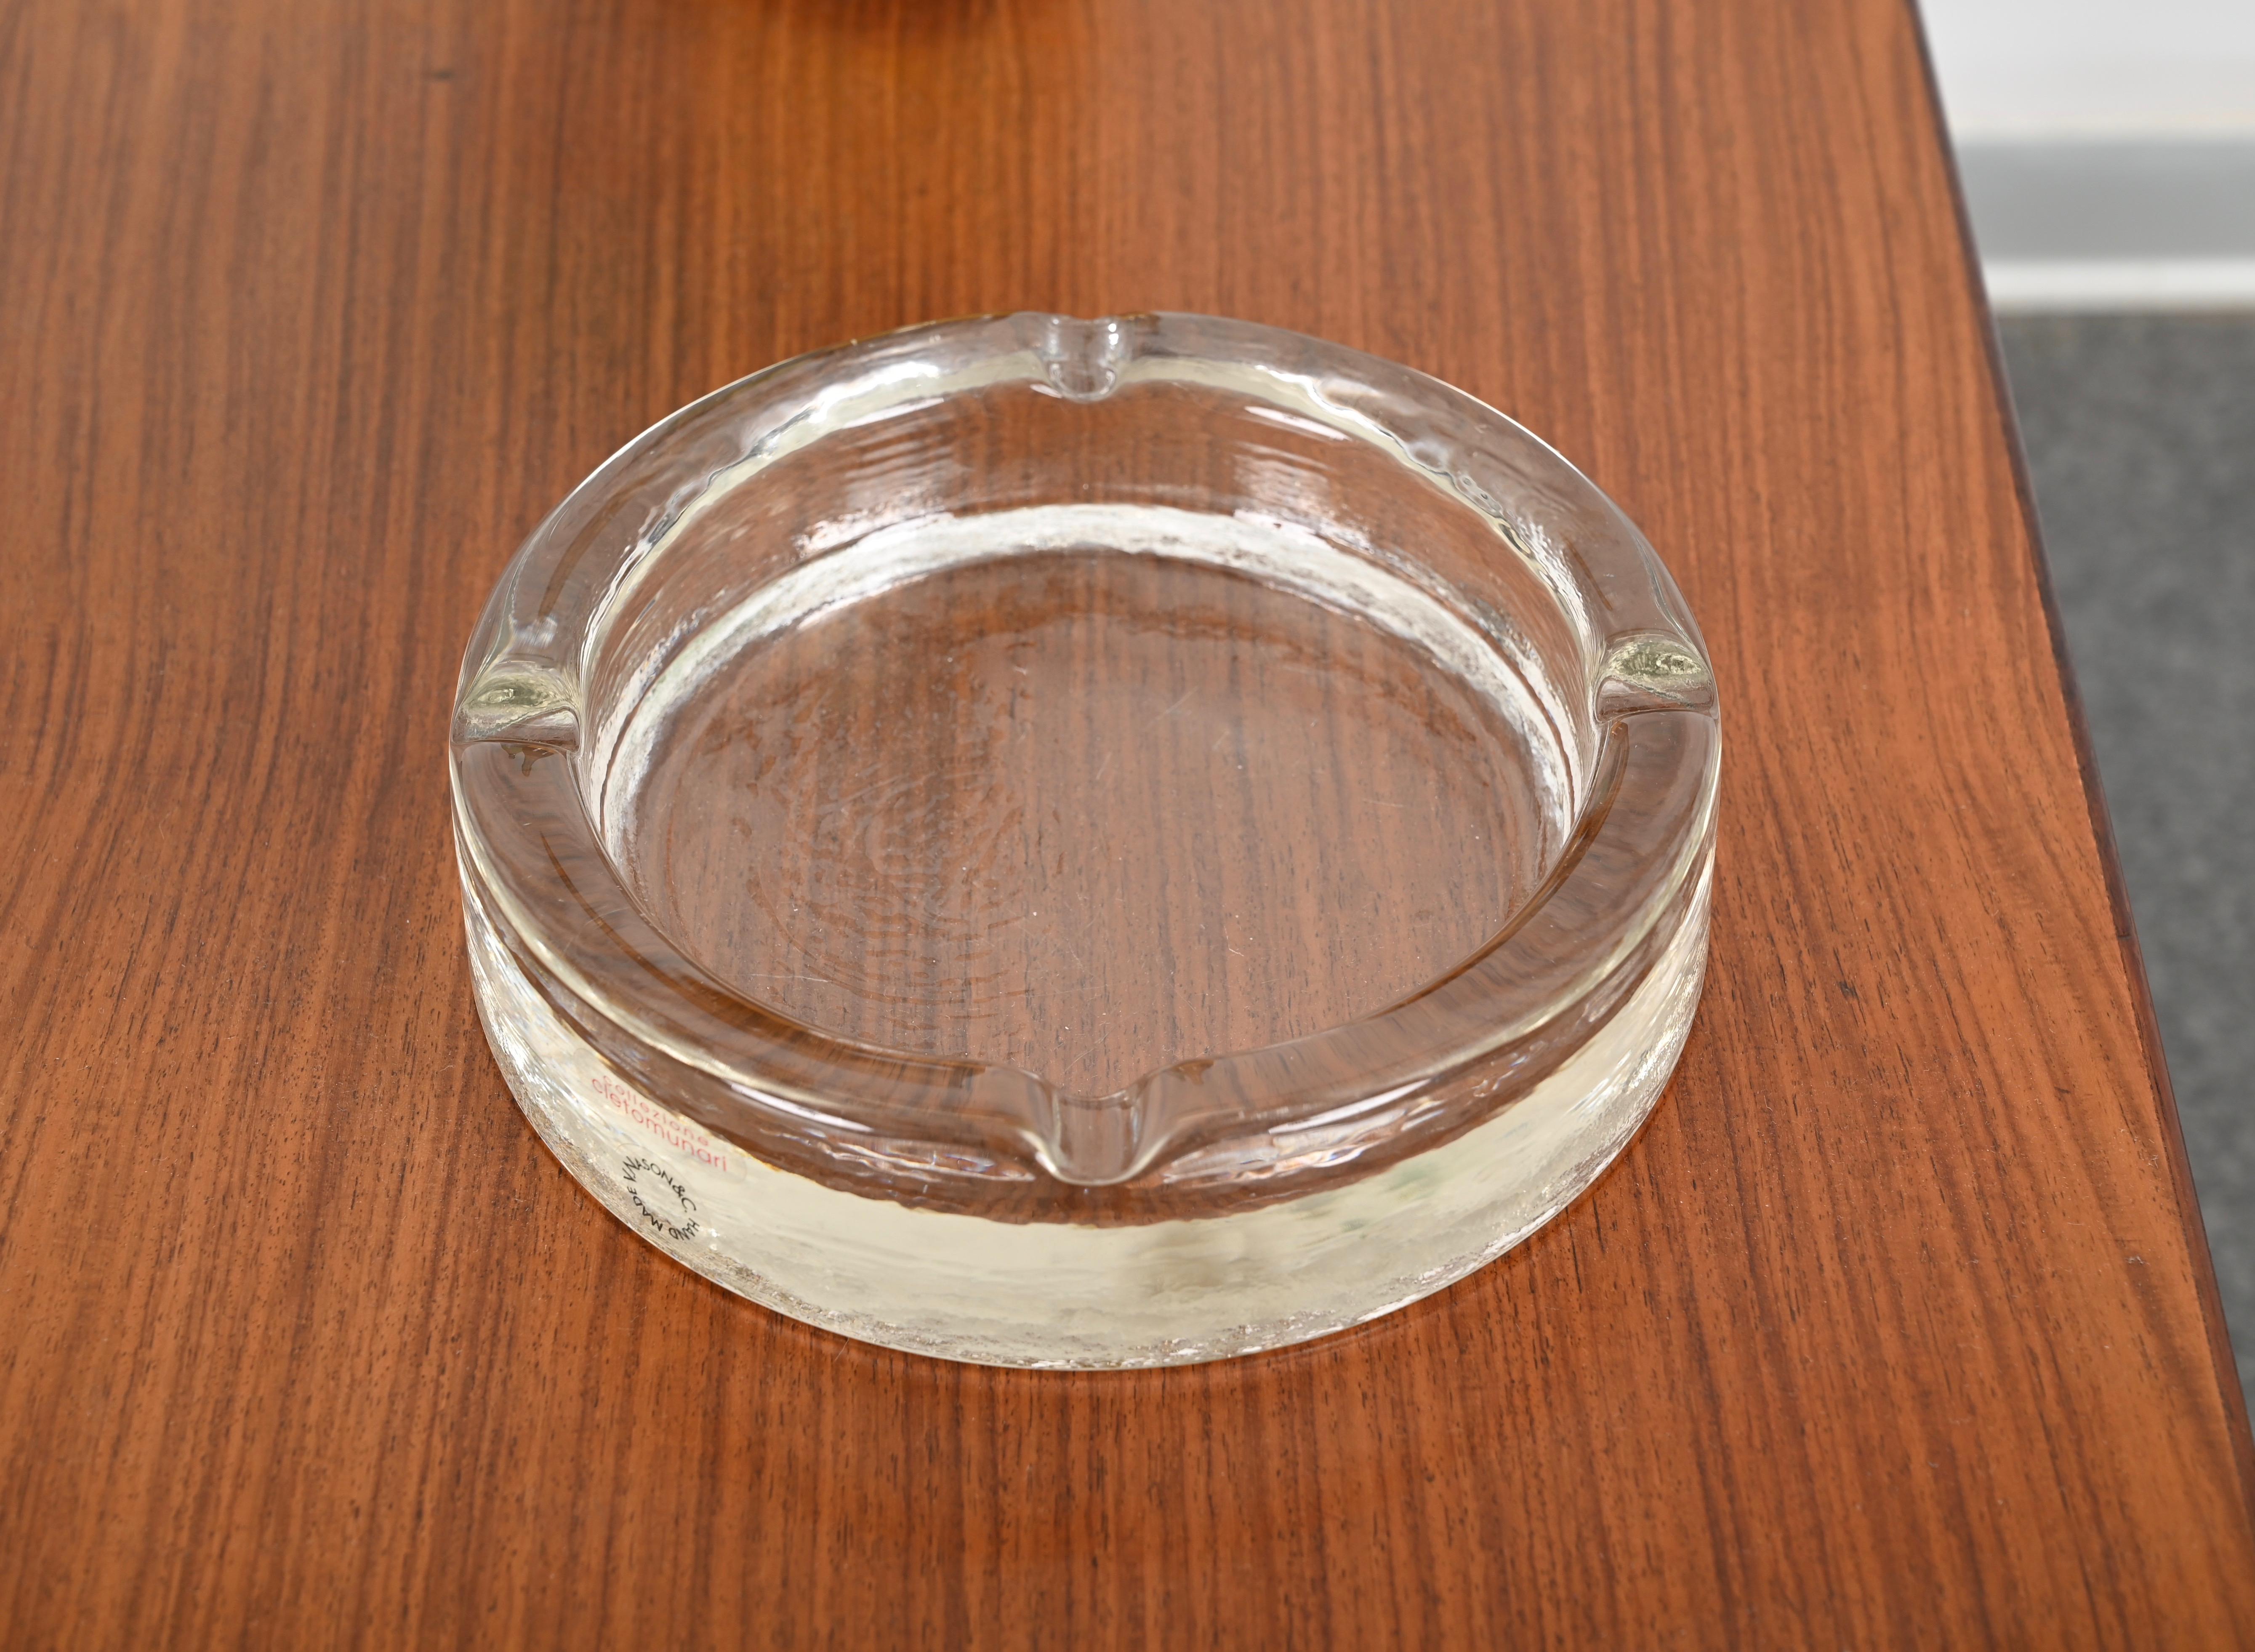 Fantastique cendrier en verre de Murano conçu par Cleto Munari et produit par Nason en Italie dans les années 1980. Ce magnifique grand cendrier est dans un état exceptionnel et possède encore son étiquette d'origine en parfait état également. 

Ce